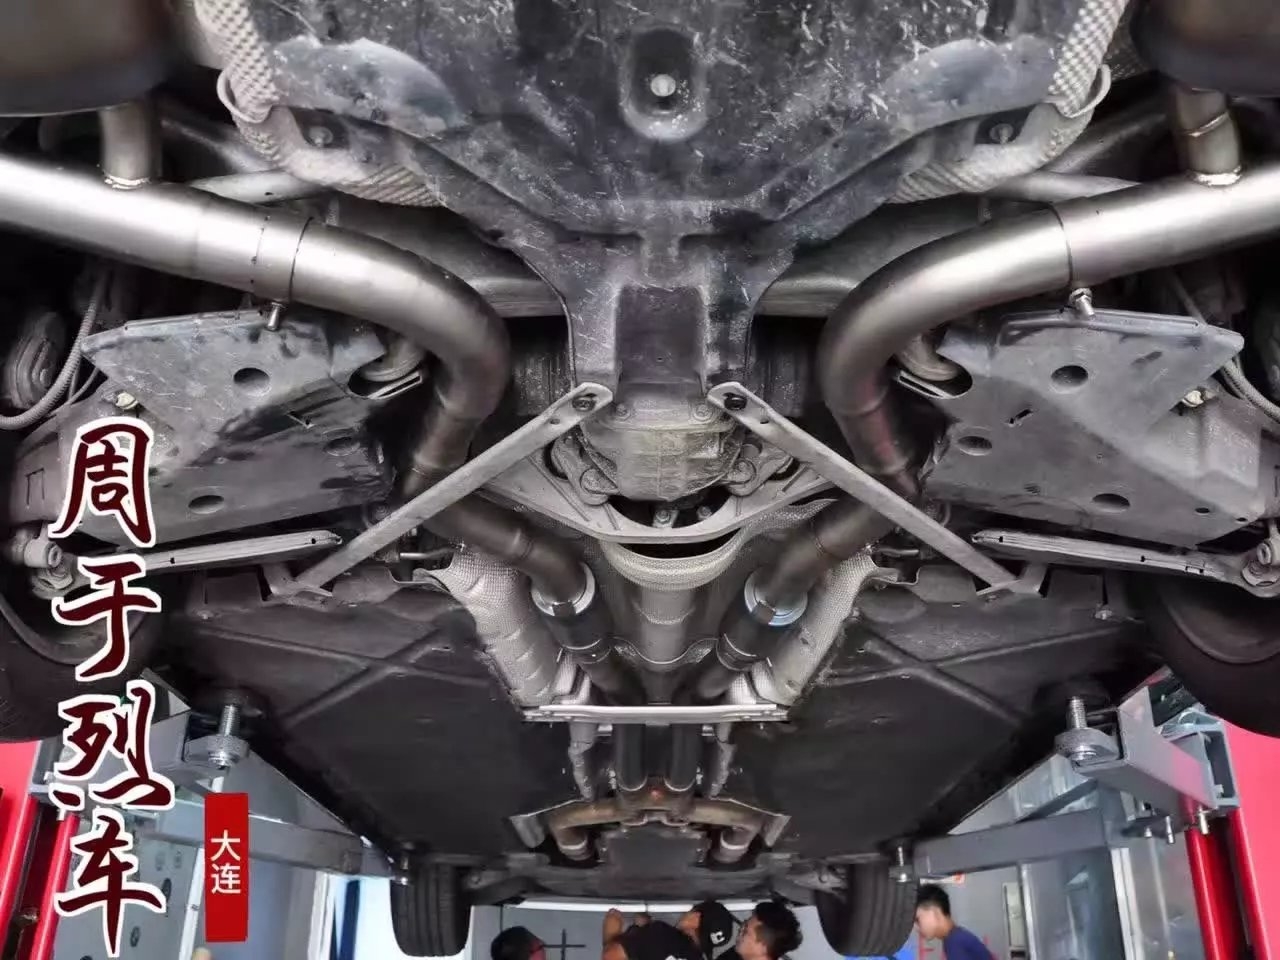 大连市 奔驰S320 升级安装RES钛合金周于烈车定制版排气